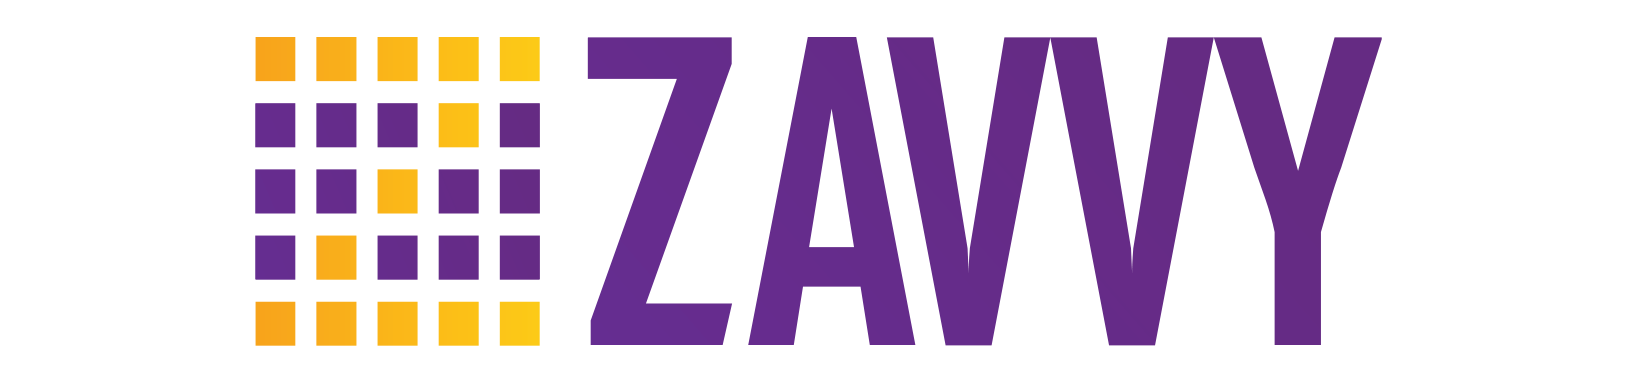 Zavvy Network